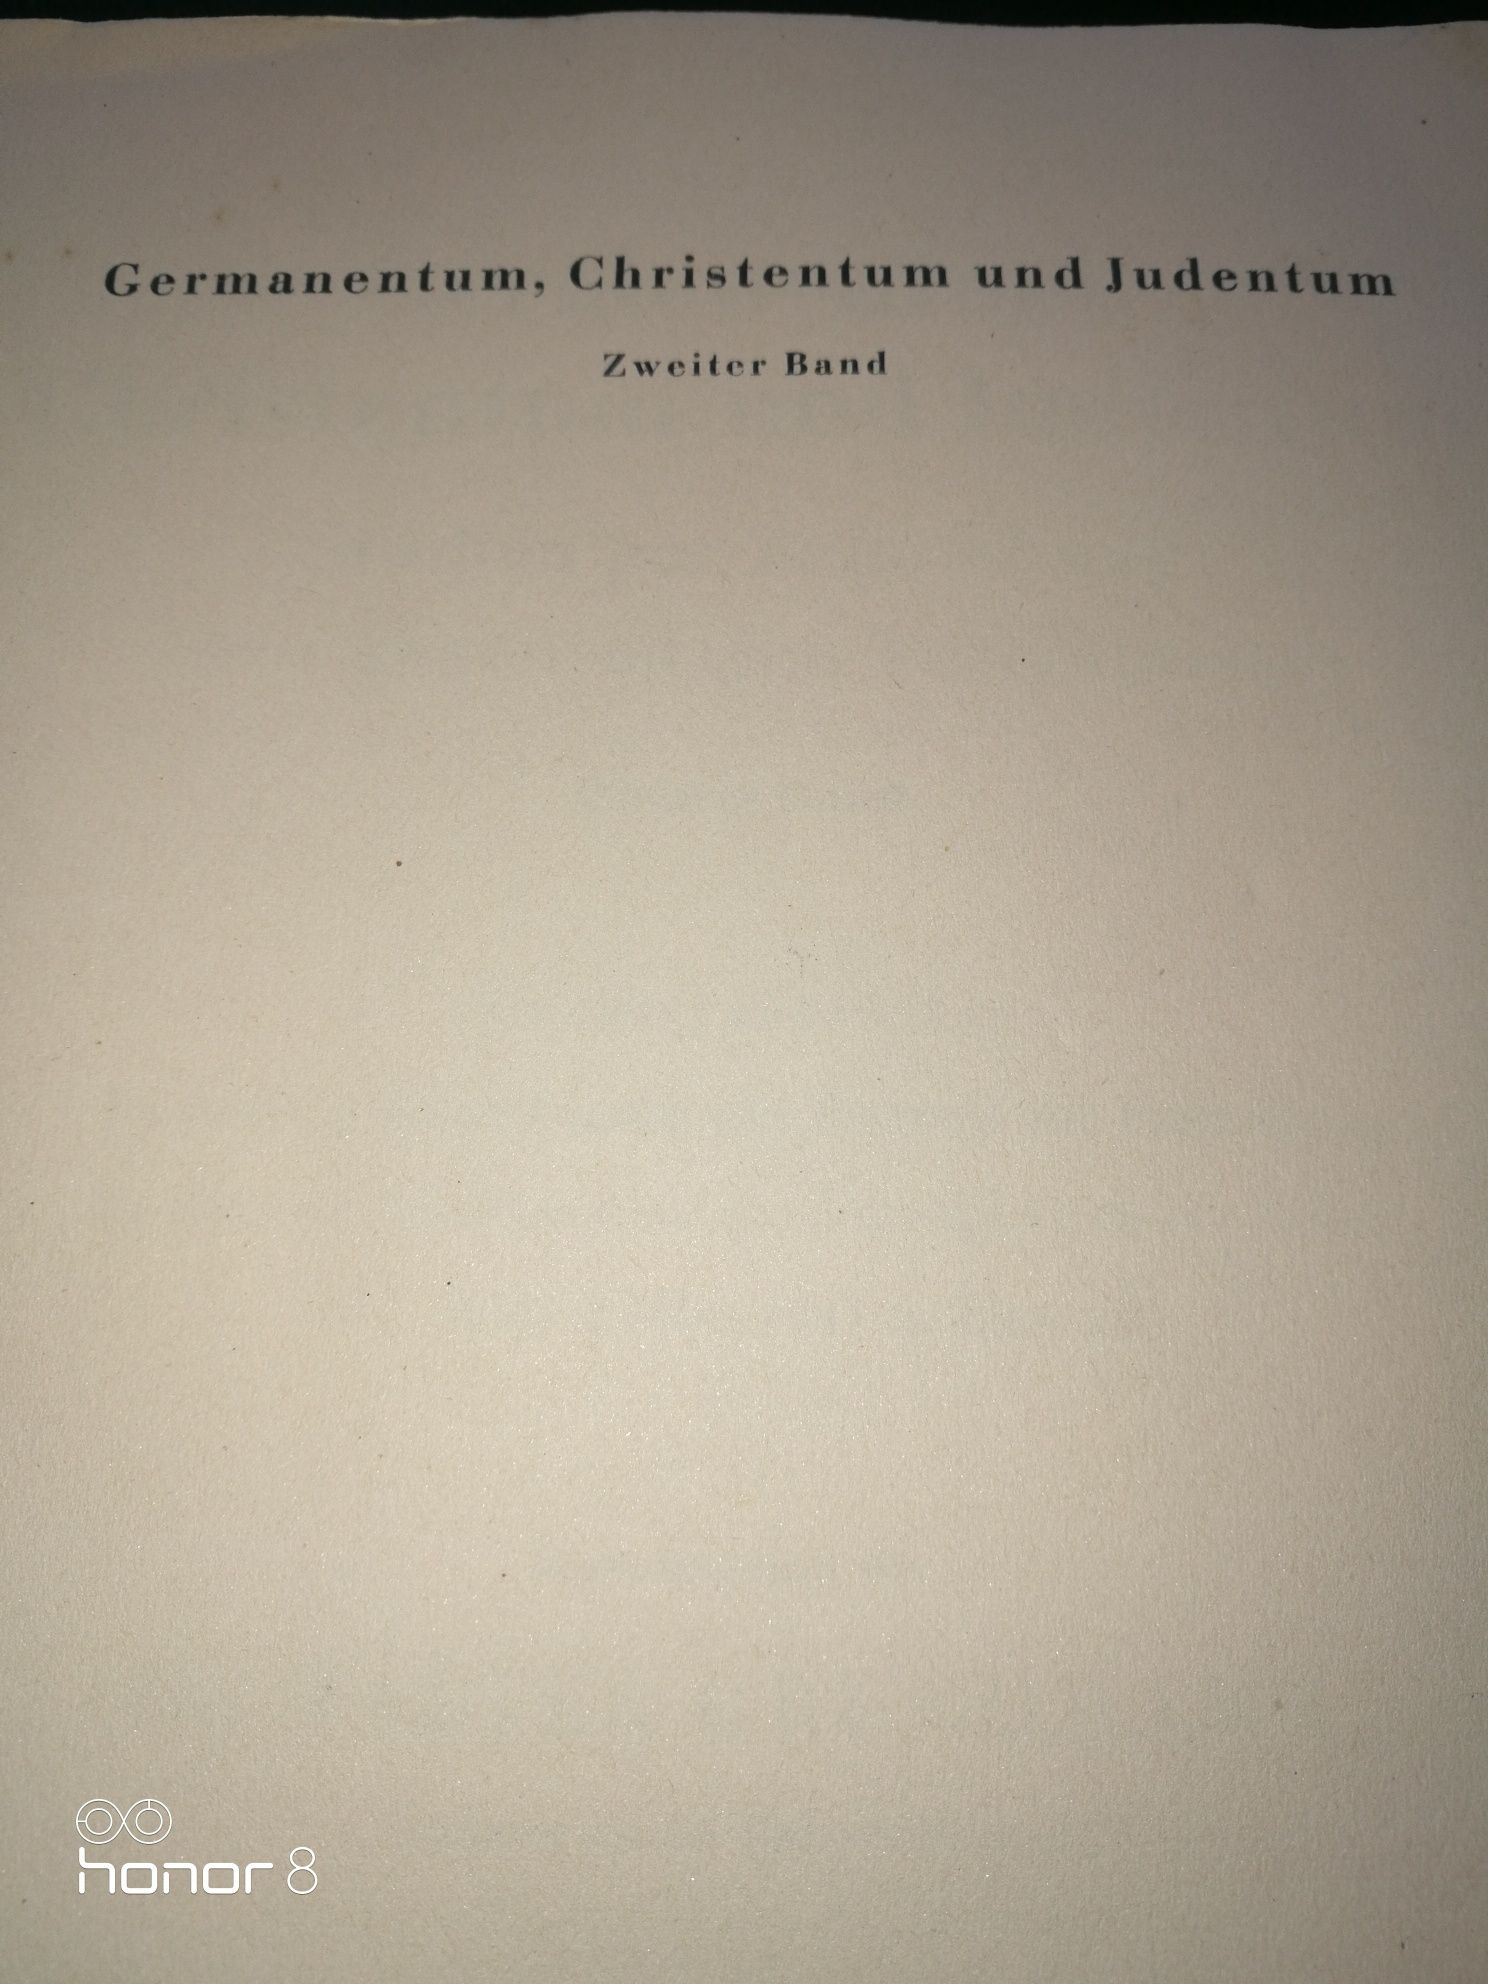 Germanentum Christentum und Judentum